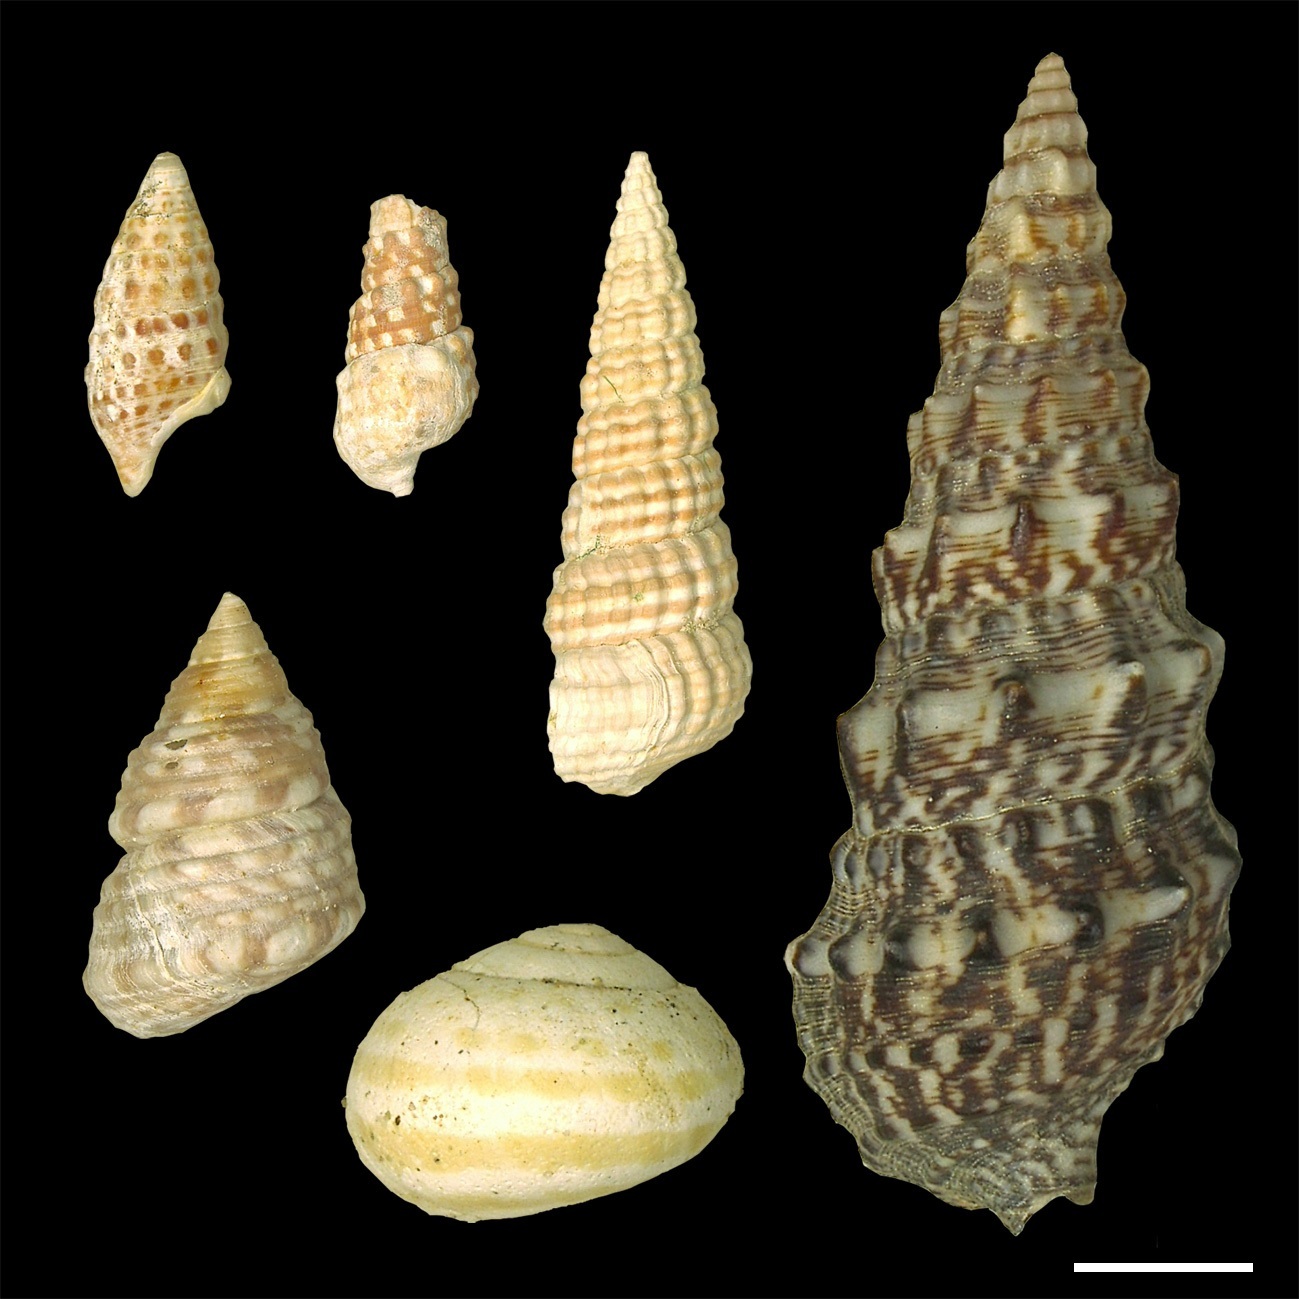 Farbige fossile Schneckengehäuse (links) und Schneckengehäuse aus heutiger Zeit (großes Exemplar rechts) (Maßstabsleiste: 1 cm)